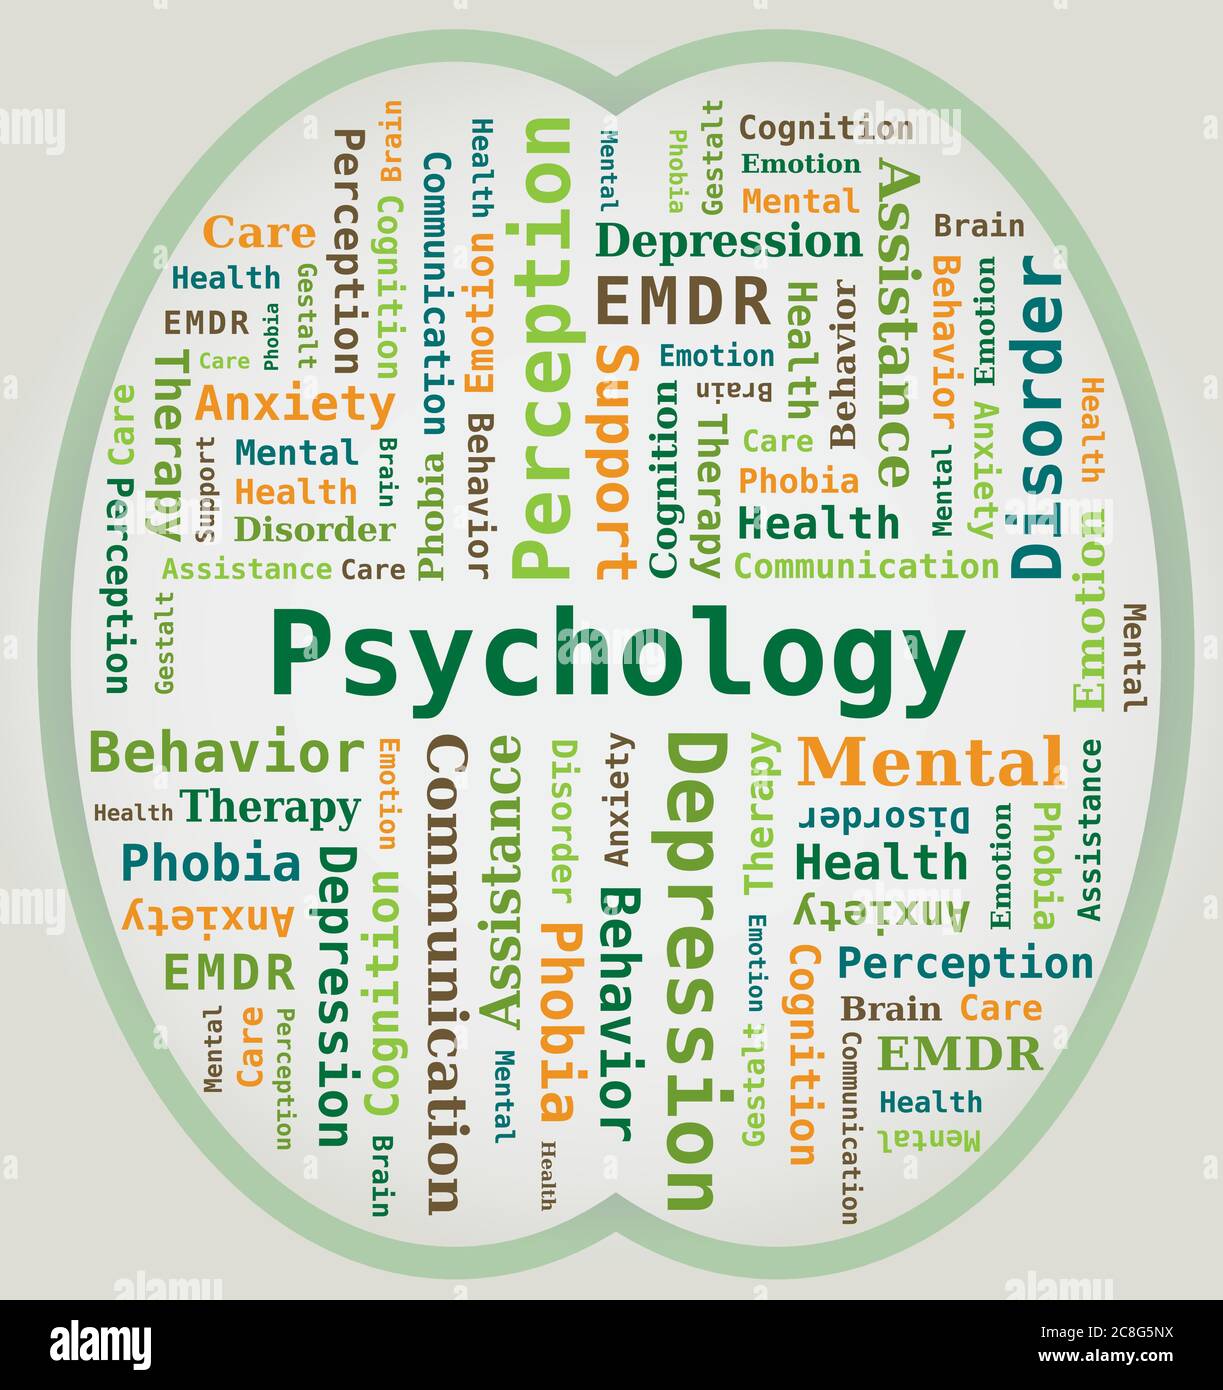 La psychologie du nuage de mots et la santé mentale en forme de cerveau Illustration de Vecteur